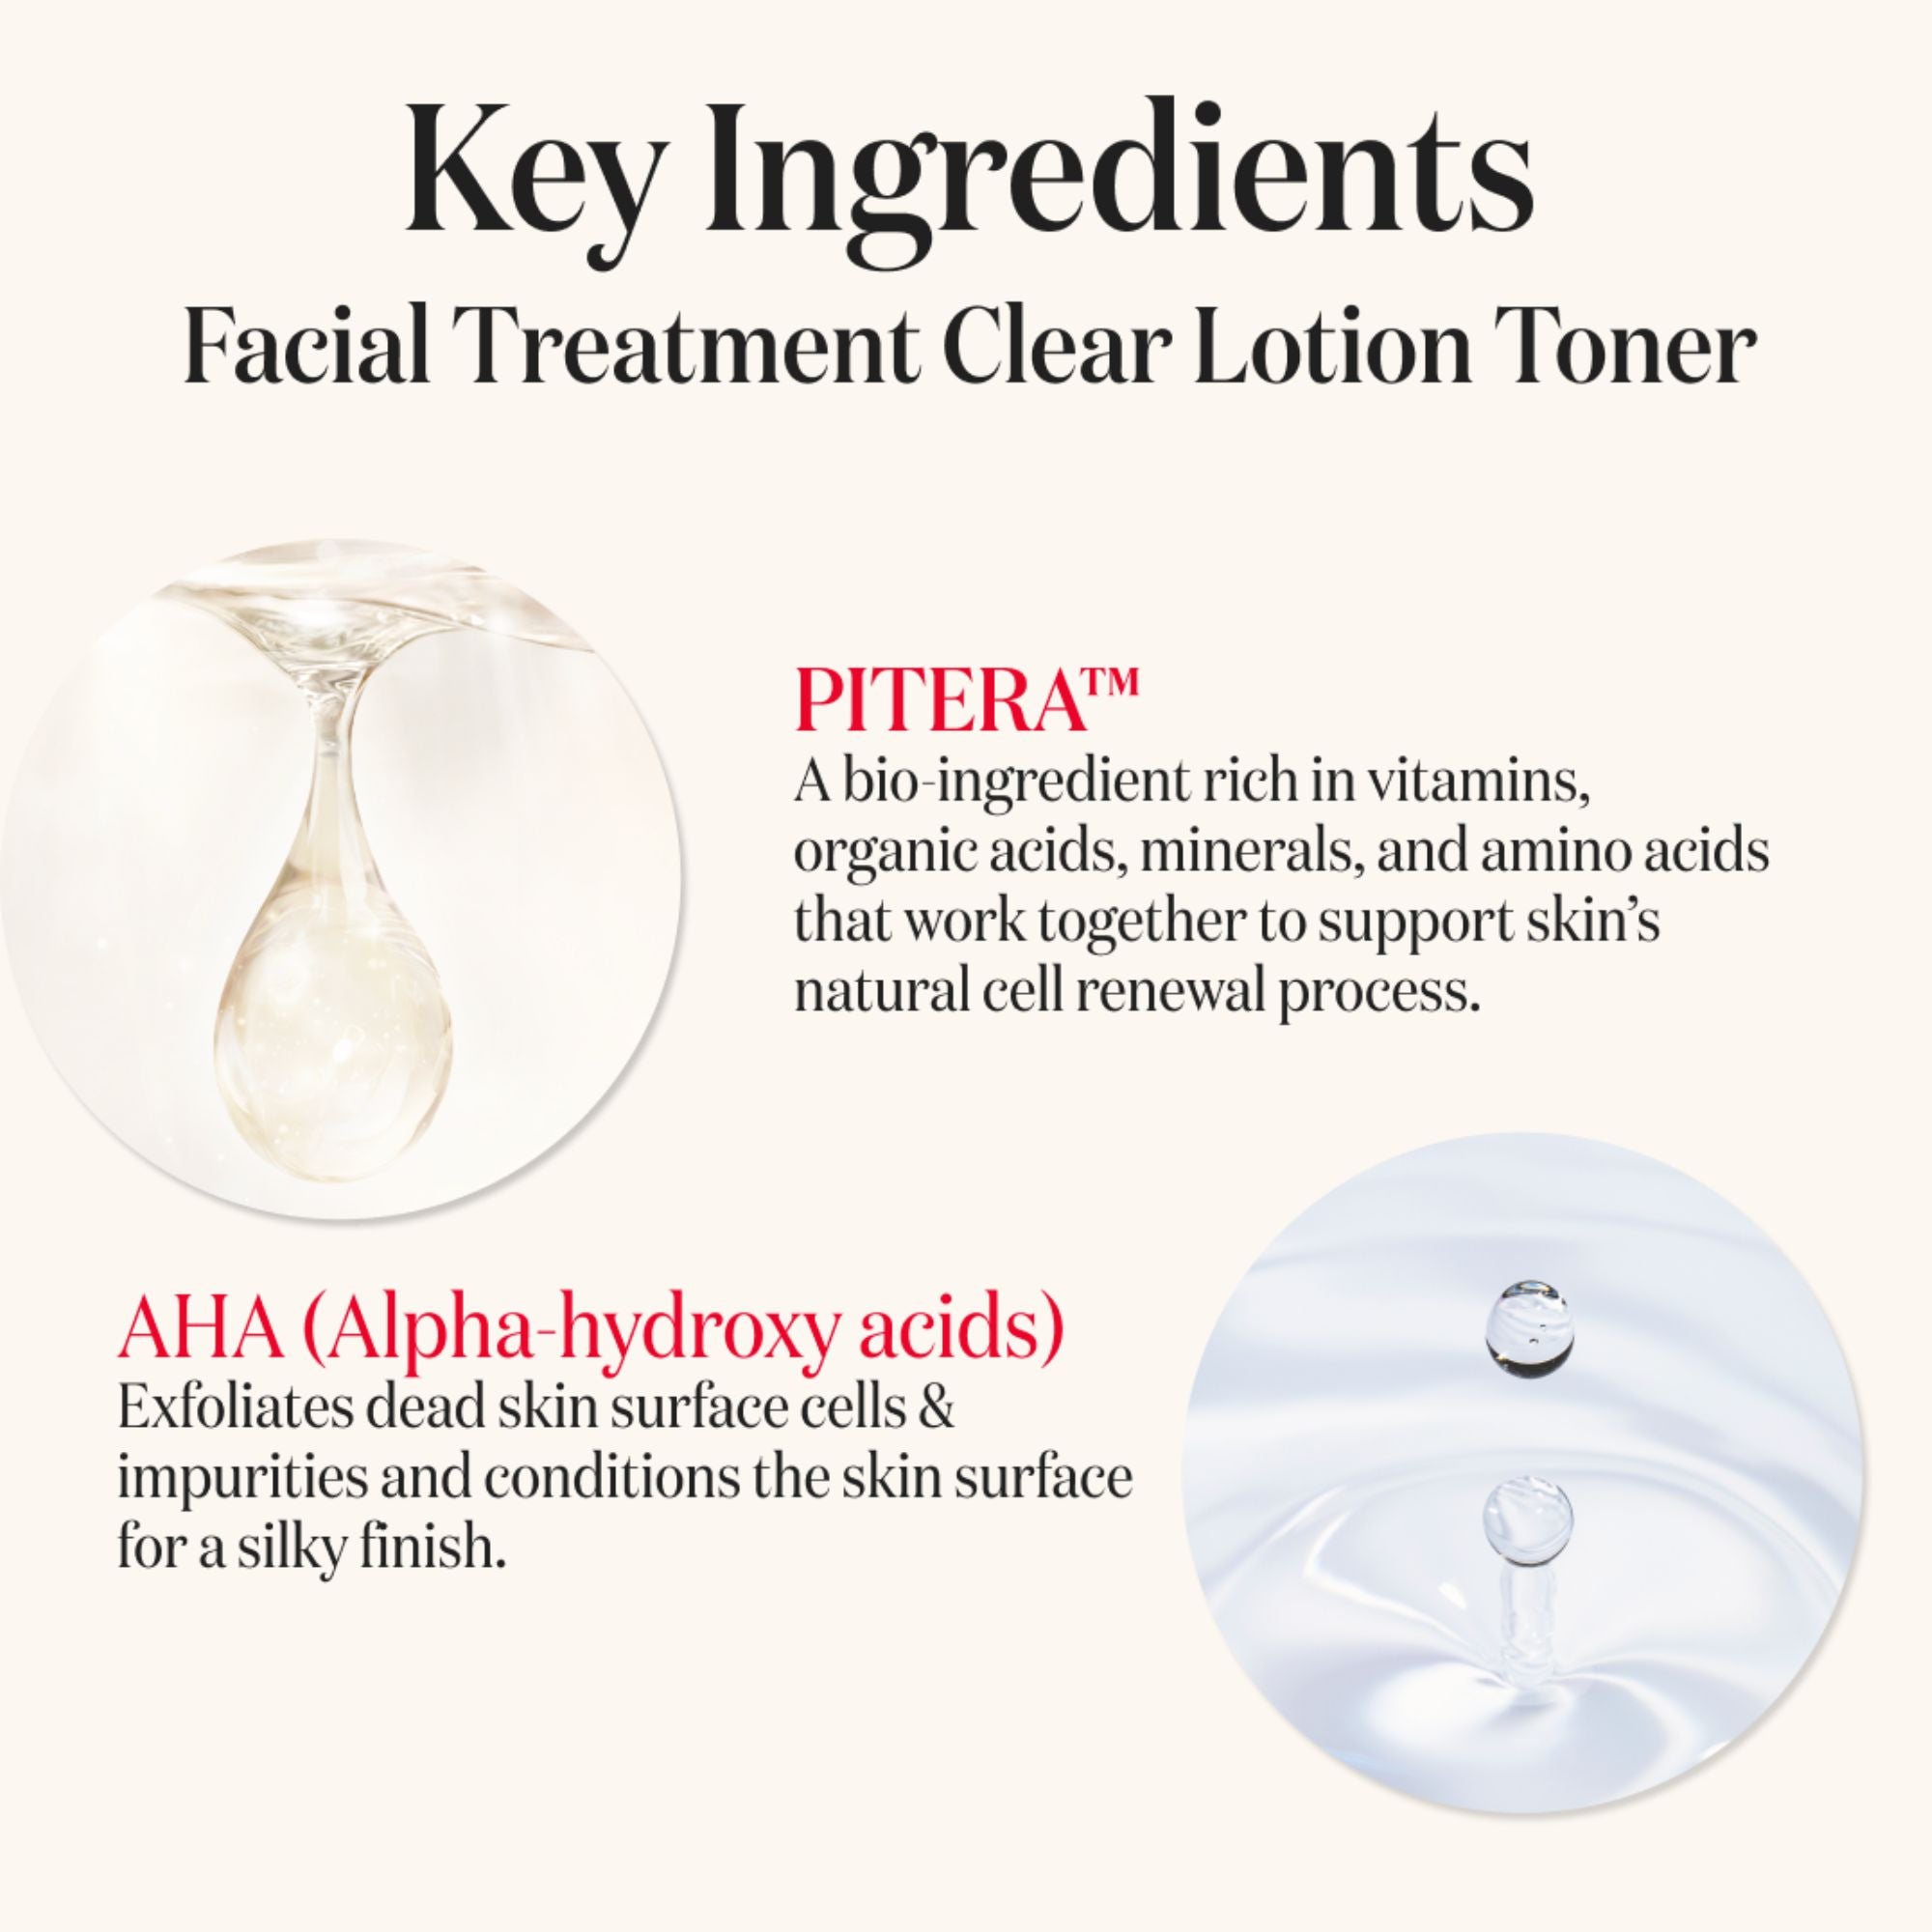 SK-II Facial Treatment Clear Lotion Toner